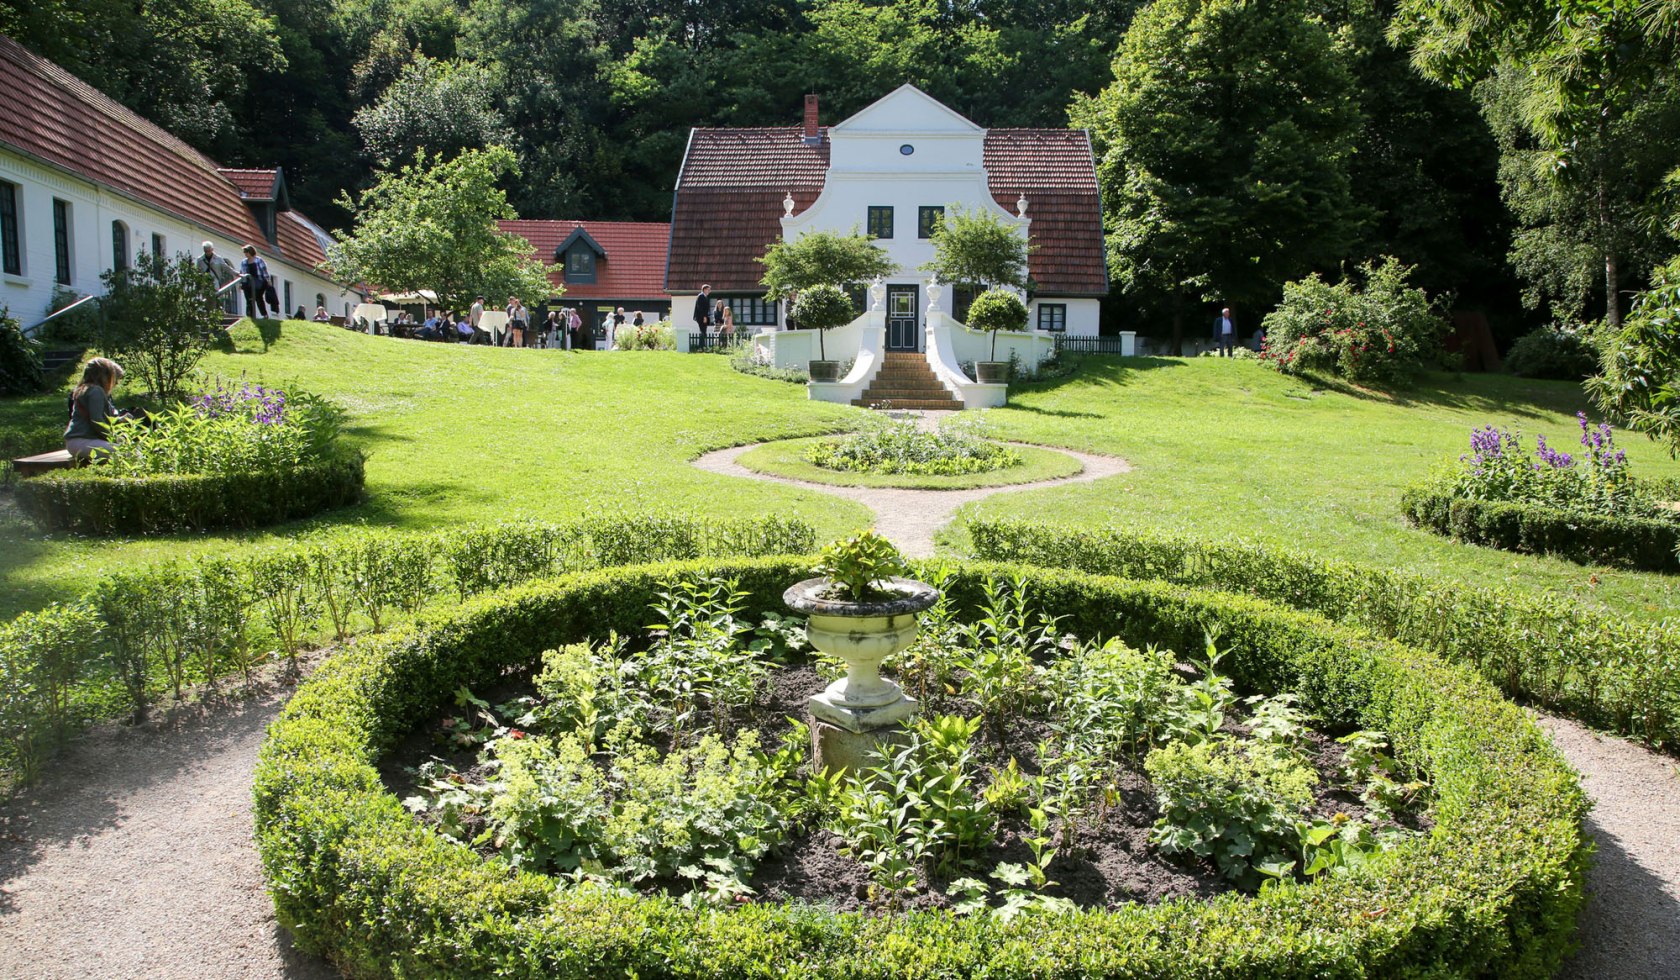 Barkenhoff in grüner Gartenanlage, © Worpsweder Museumsverbund / Focke Strangmann